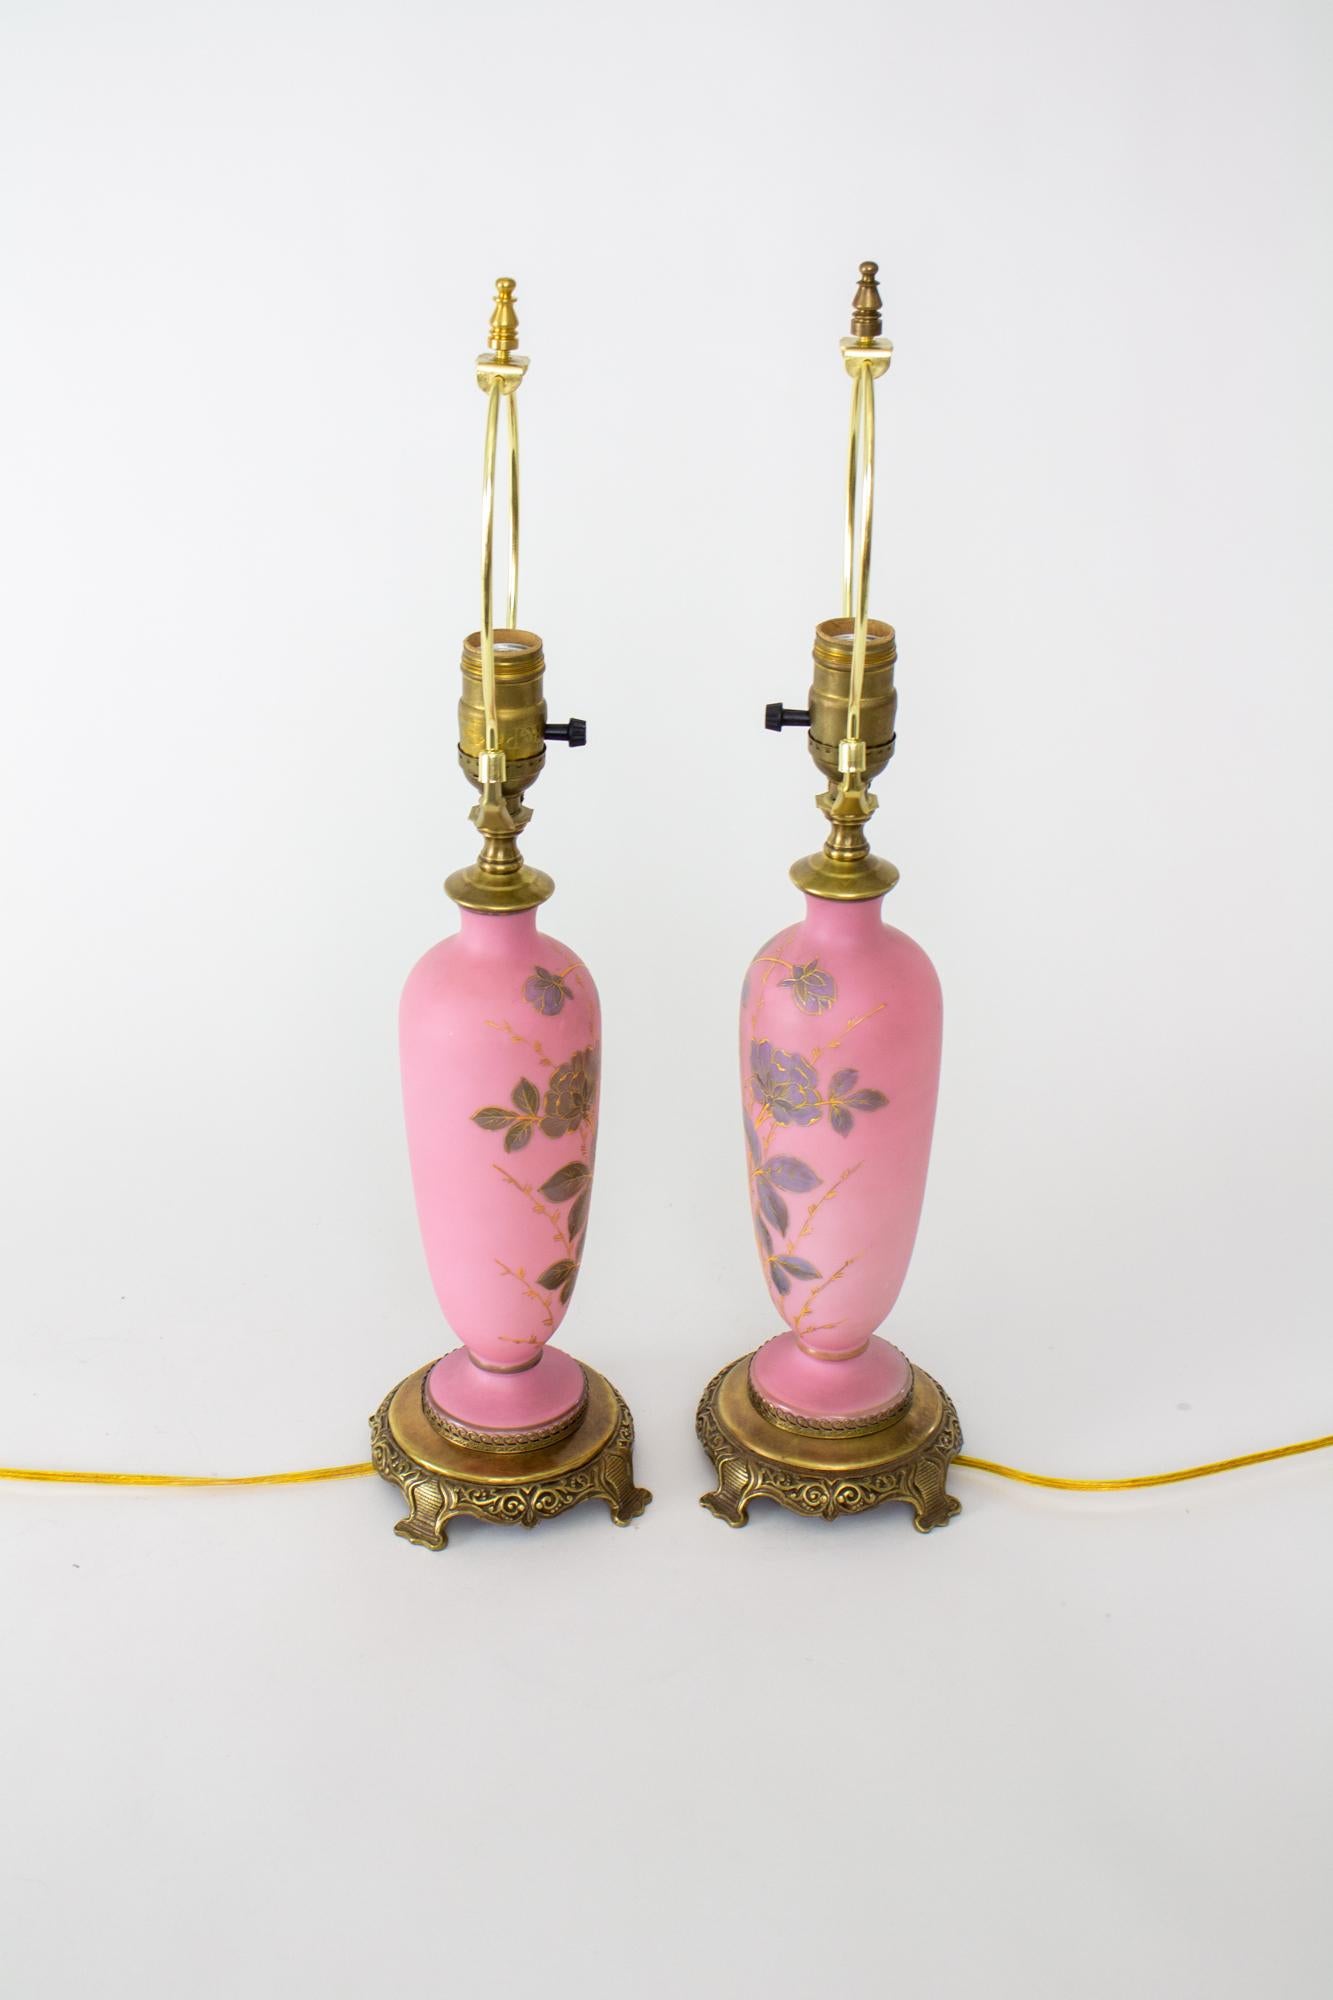 Paire de lampes de table roses autrichiennes de la fin du 19e siècle. Ces lampes sont faites d'un verre rose en forme de vase. Ils sont décorés de fleurs peintes en violet avec des détails dorés en relief. Une bande sombre peinte à froid entoure la